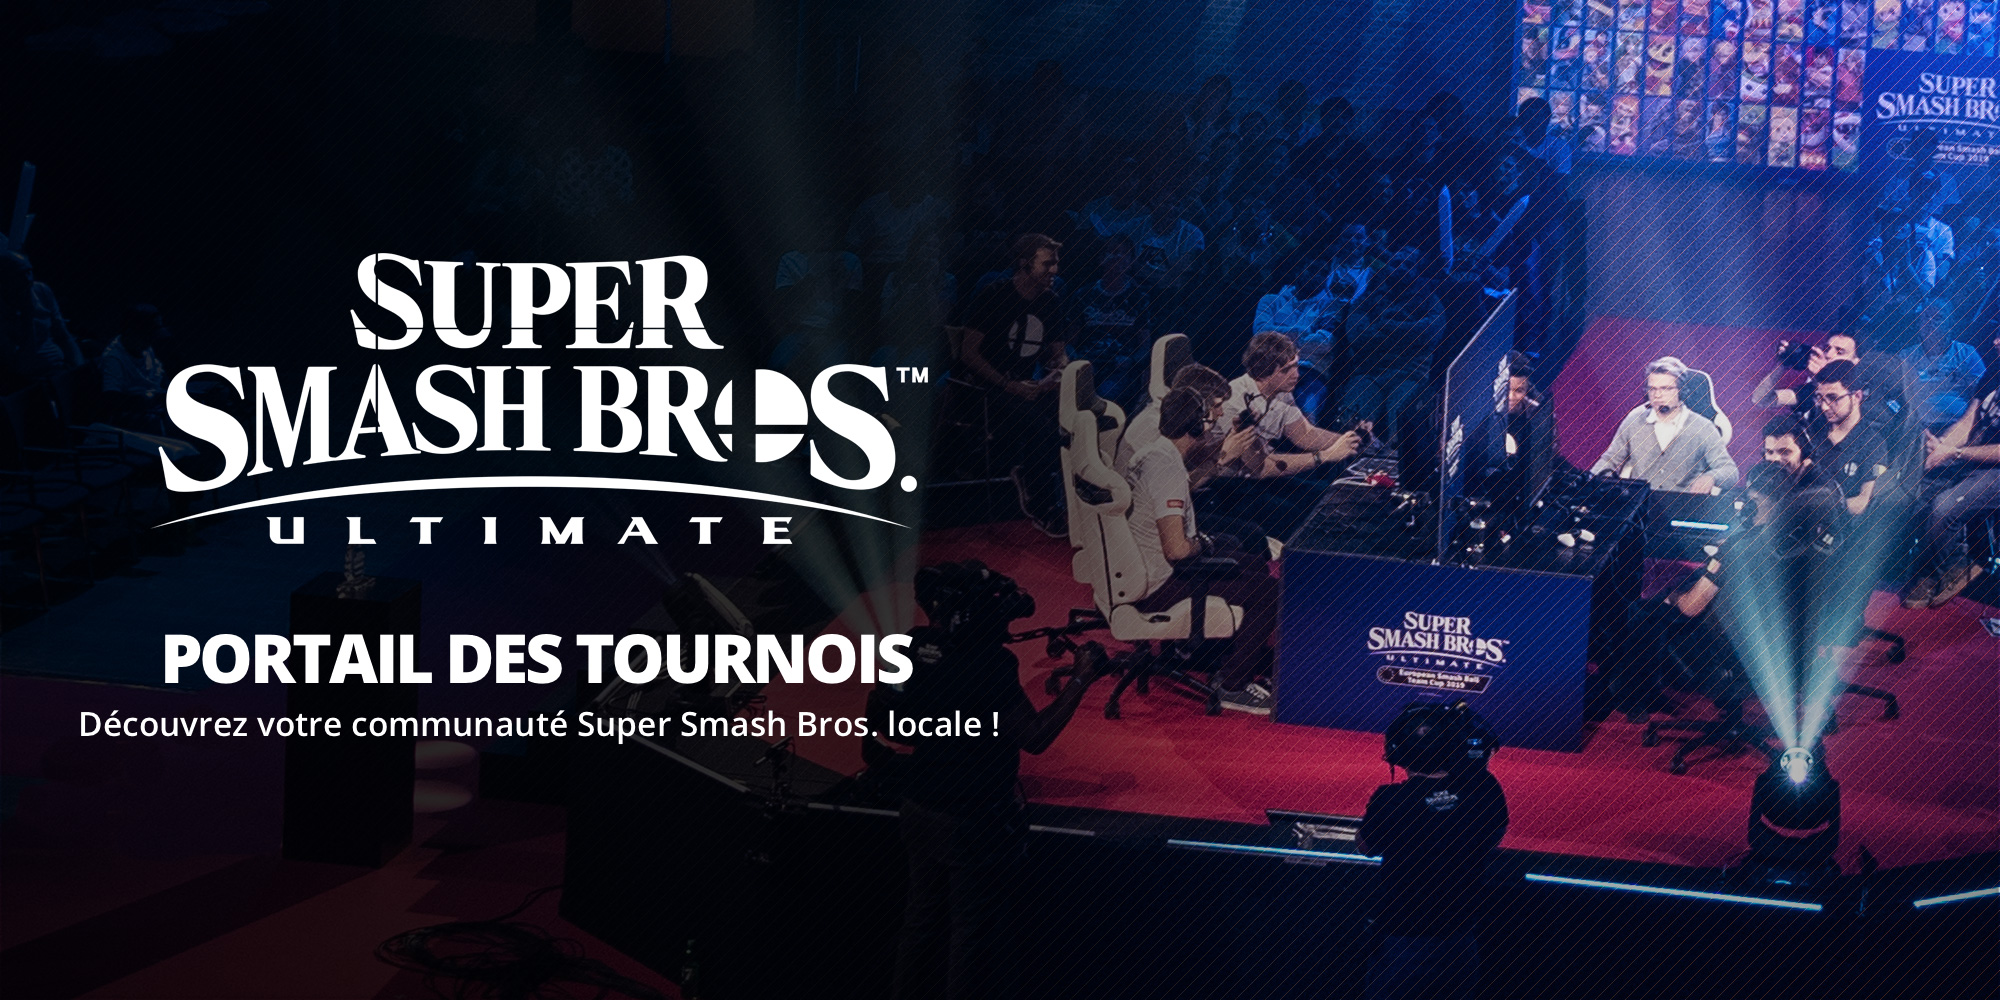 Trouvez votre communauté Smash Bros. locale grâce au portail des tournois de Super Smash Bros. Ultimate